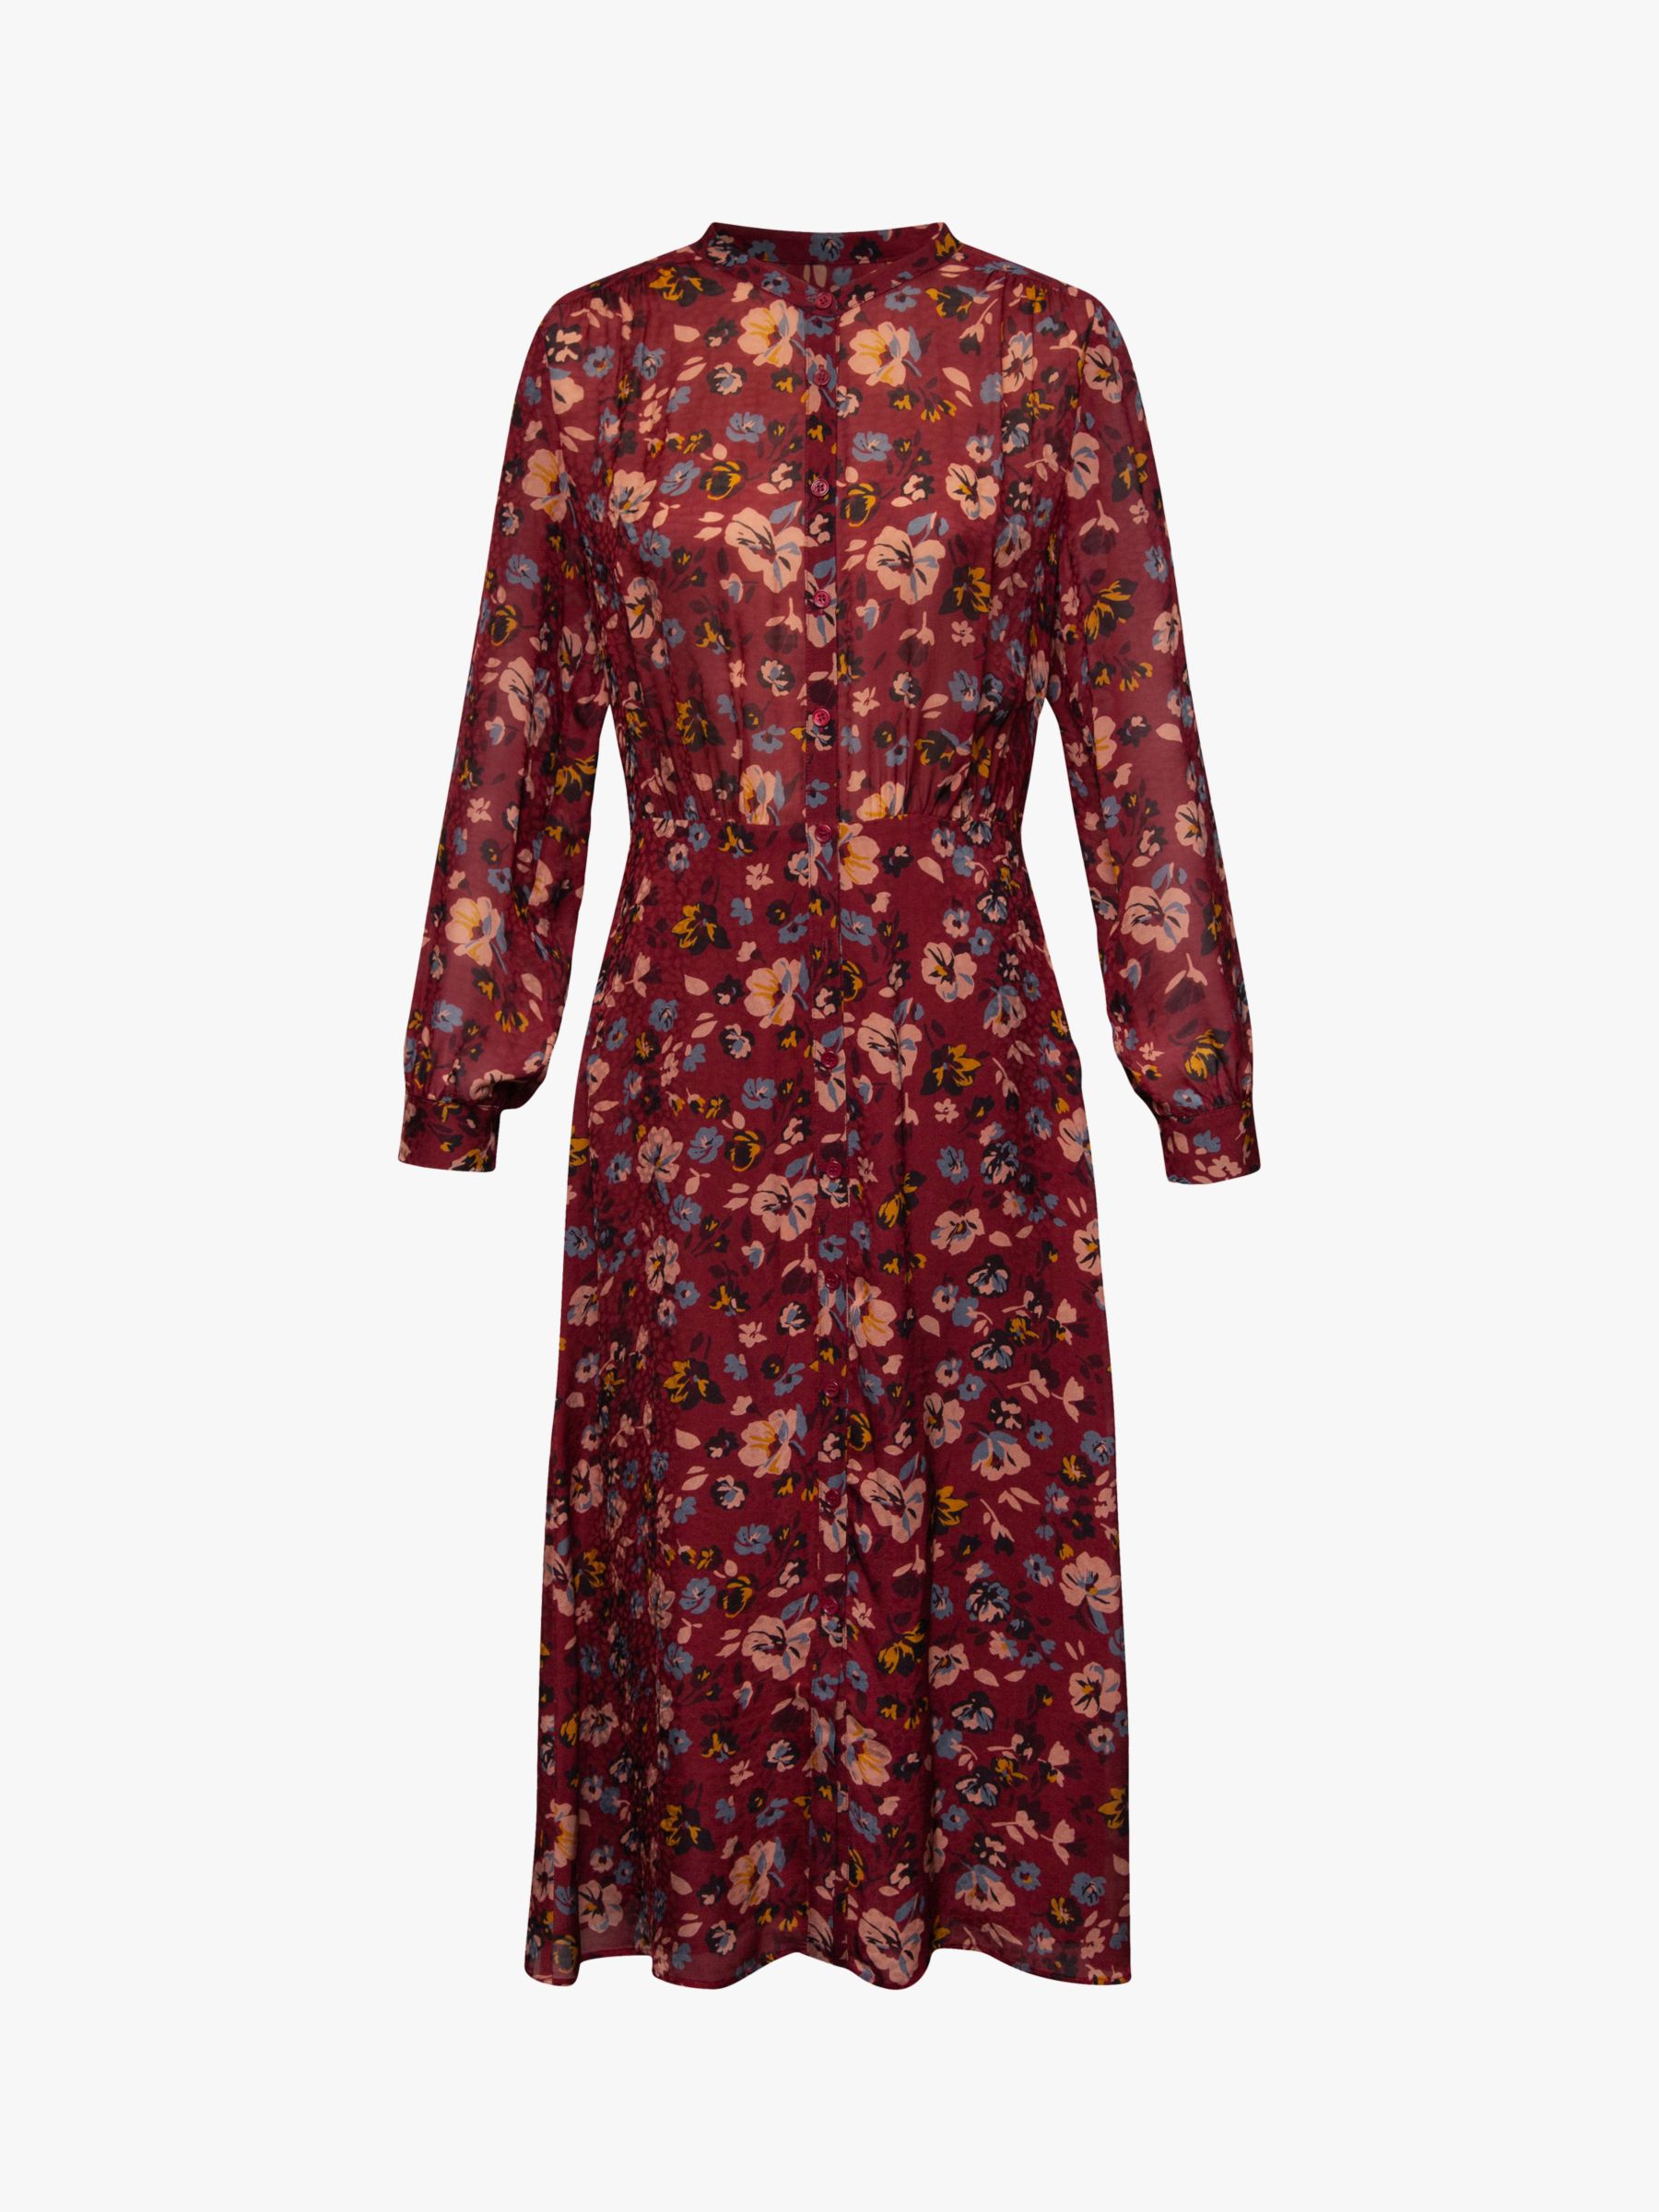 Gerard Darel Dilys Floral Print Silk Dress, Burgundy at John Lewis ...